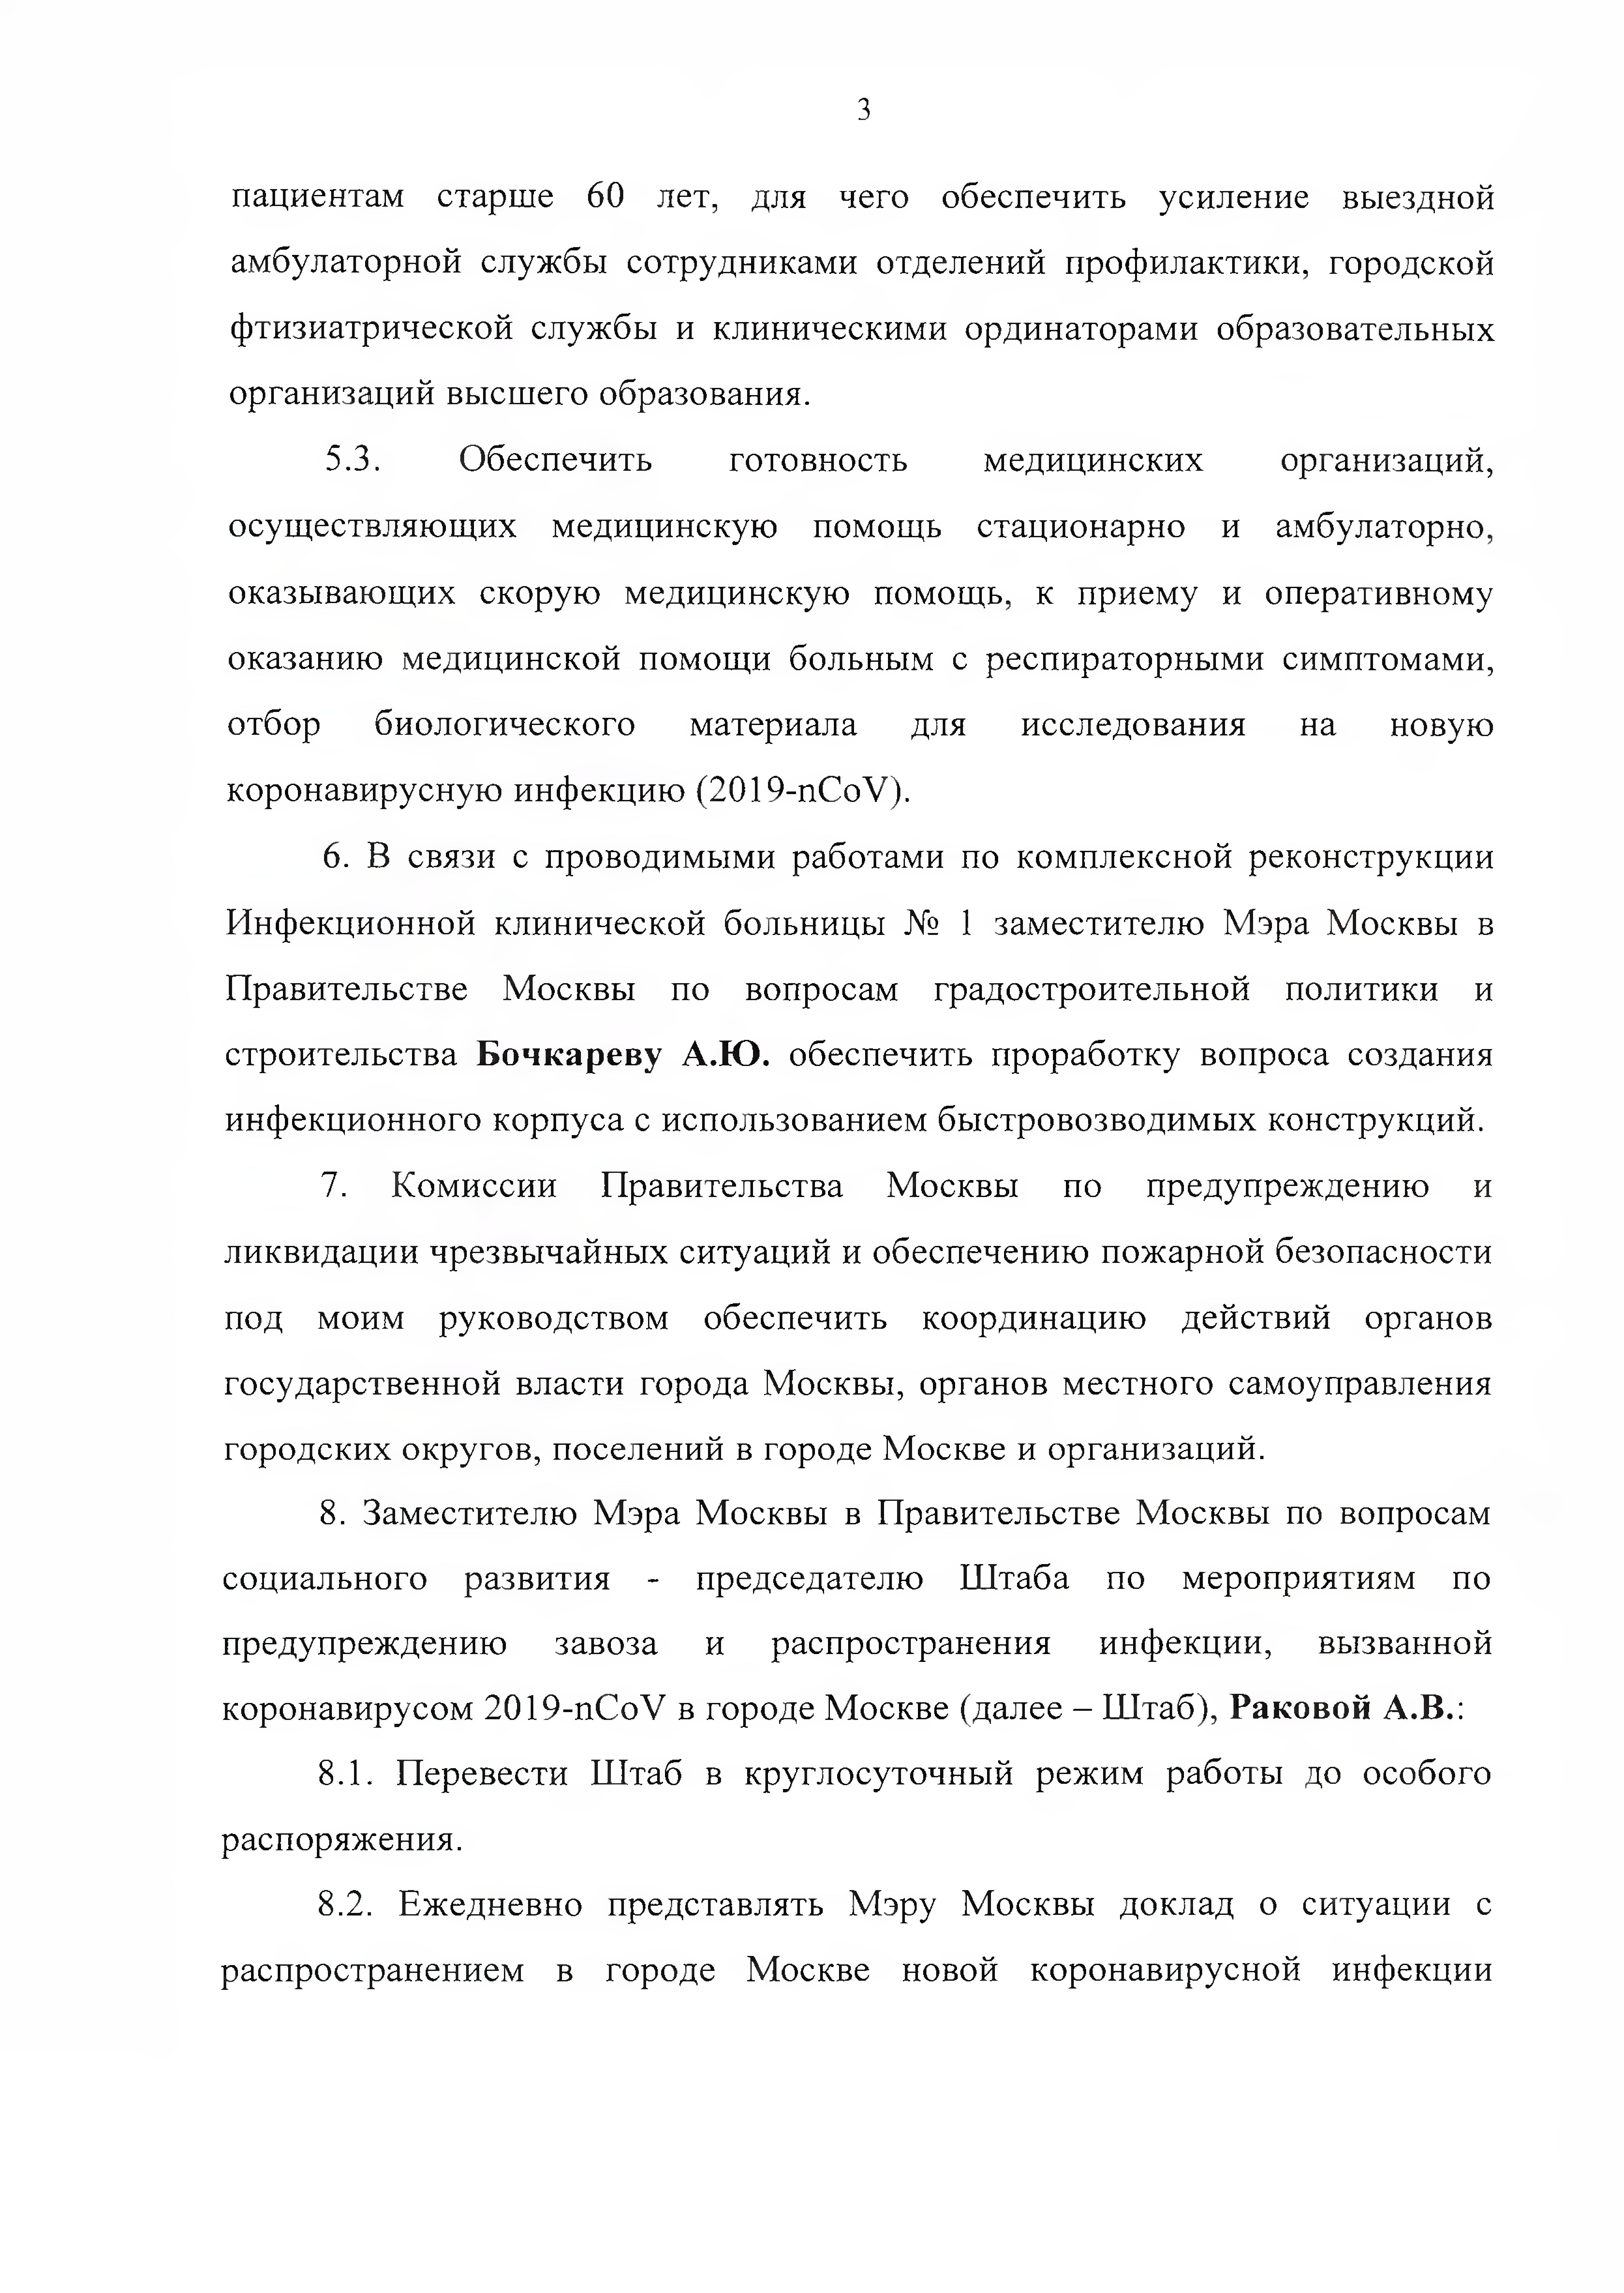 Указ мэра Москвы от 5 марта 2020 года № 12-УМ "О введении режима повышенной готовности" - фото 4